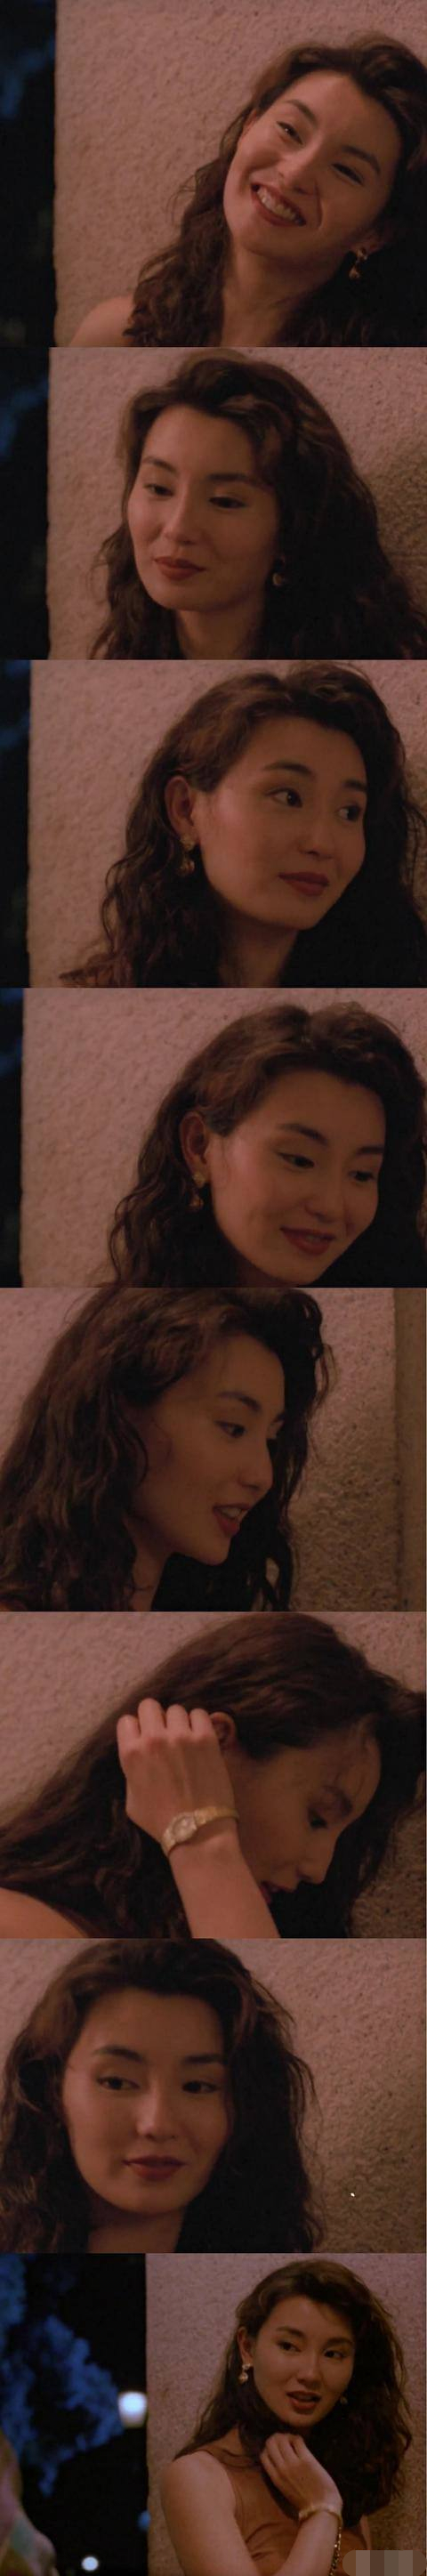 张曼玉的电影《真的爱你》,港风的发型和服装,美得让人窒息!